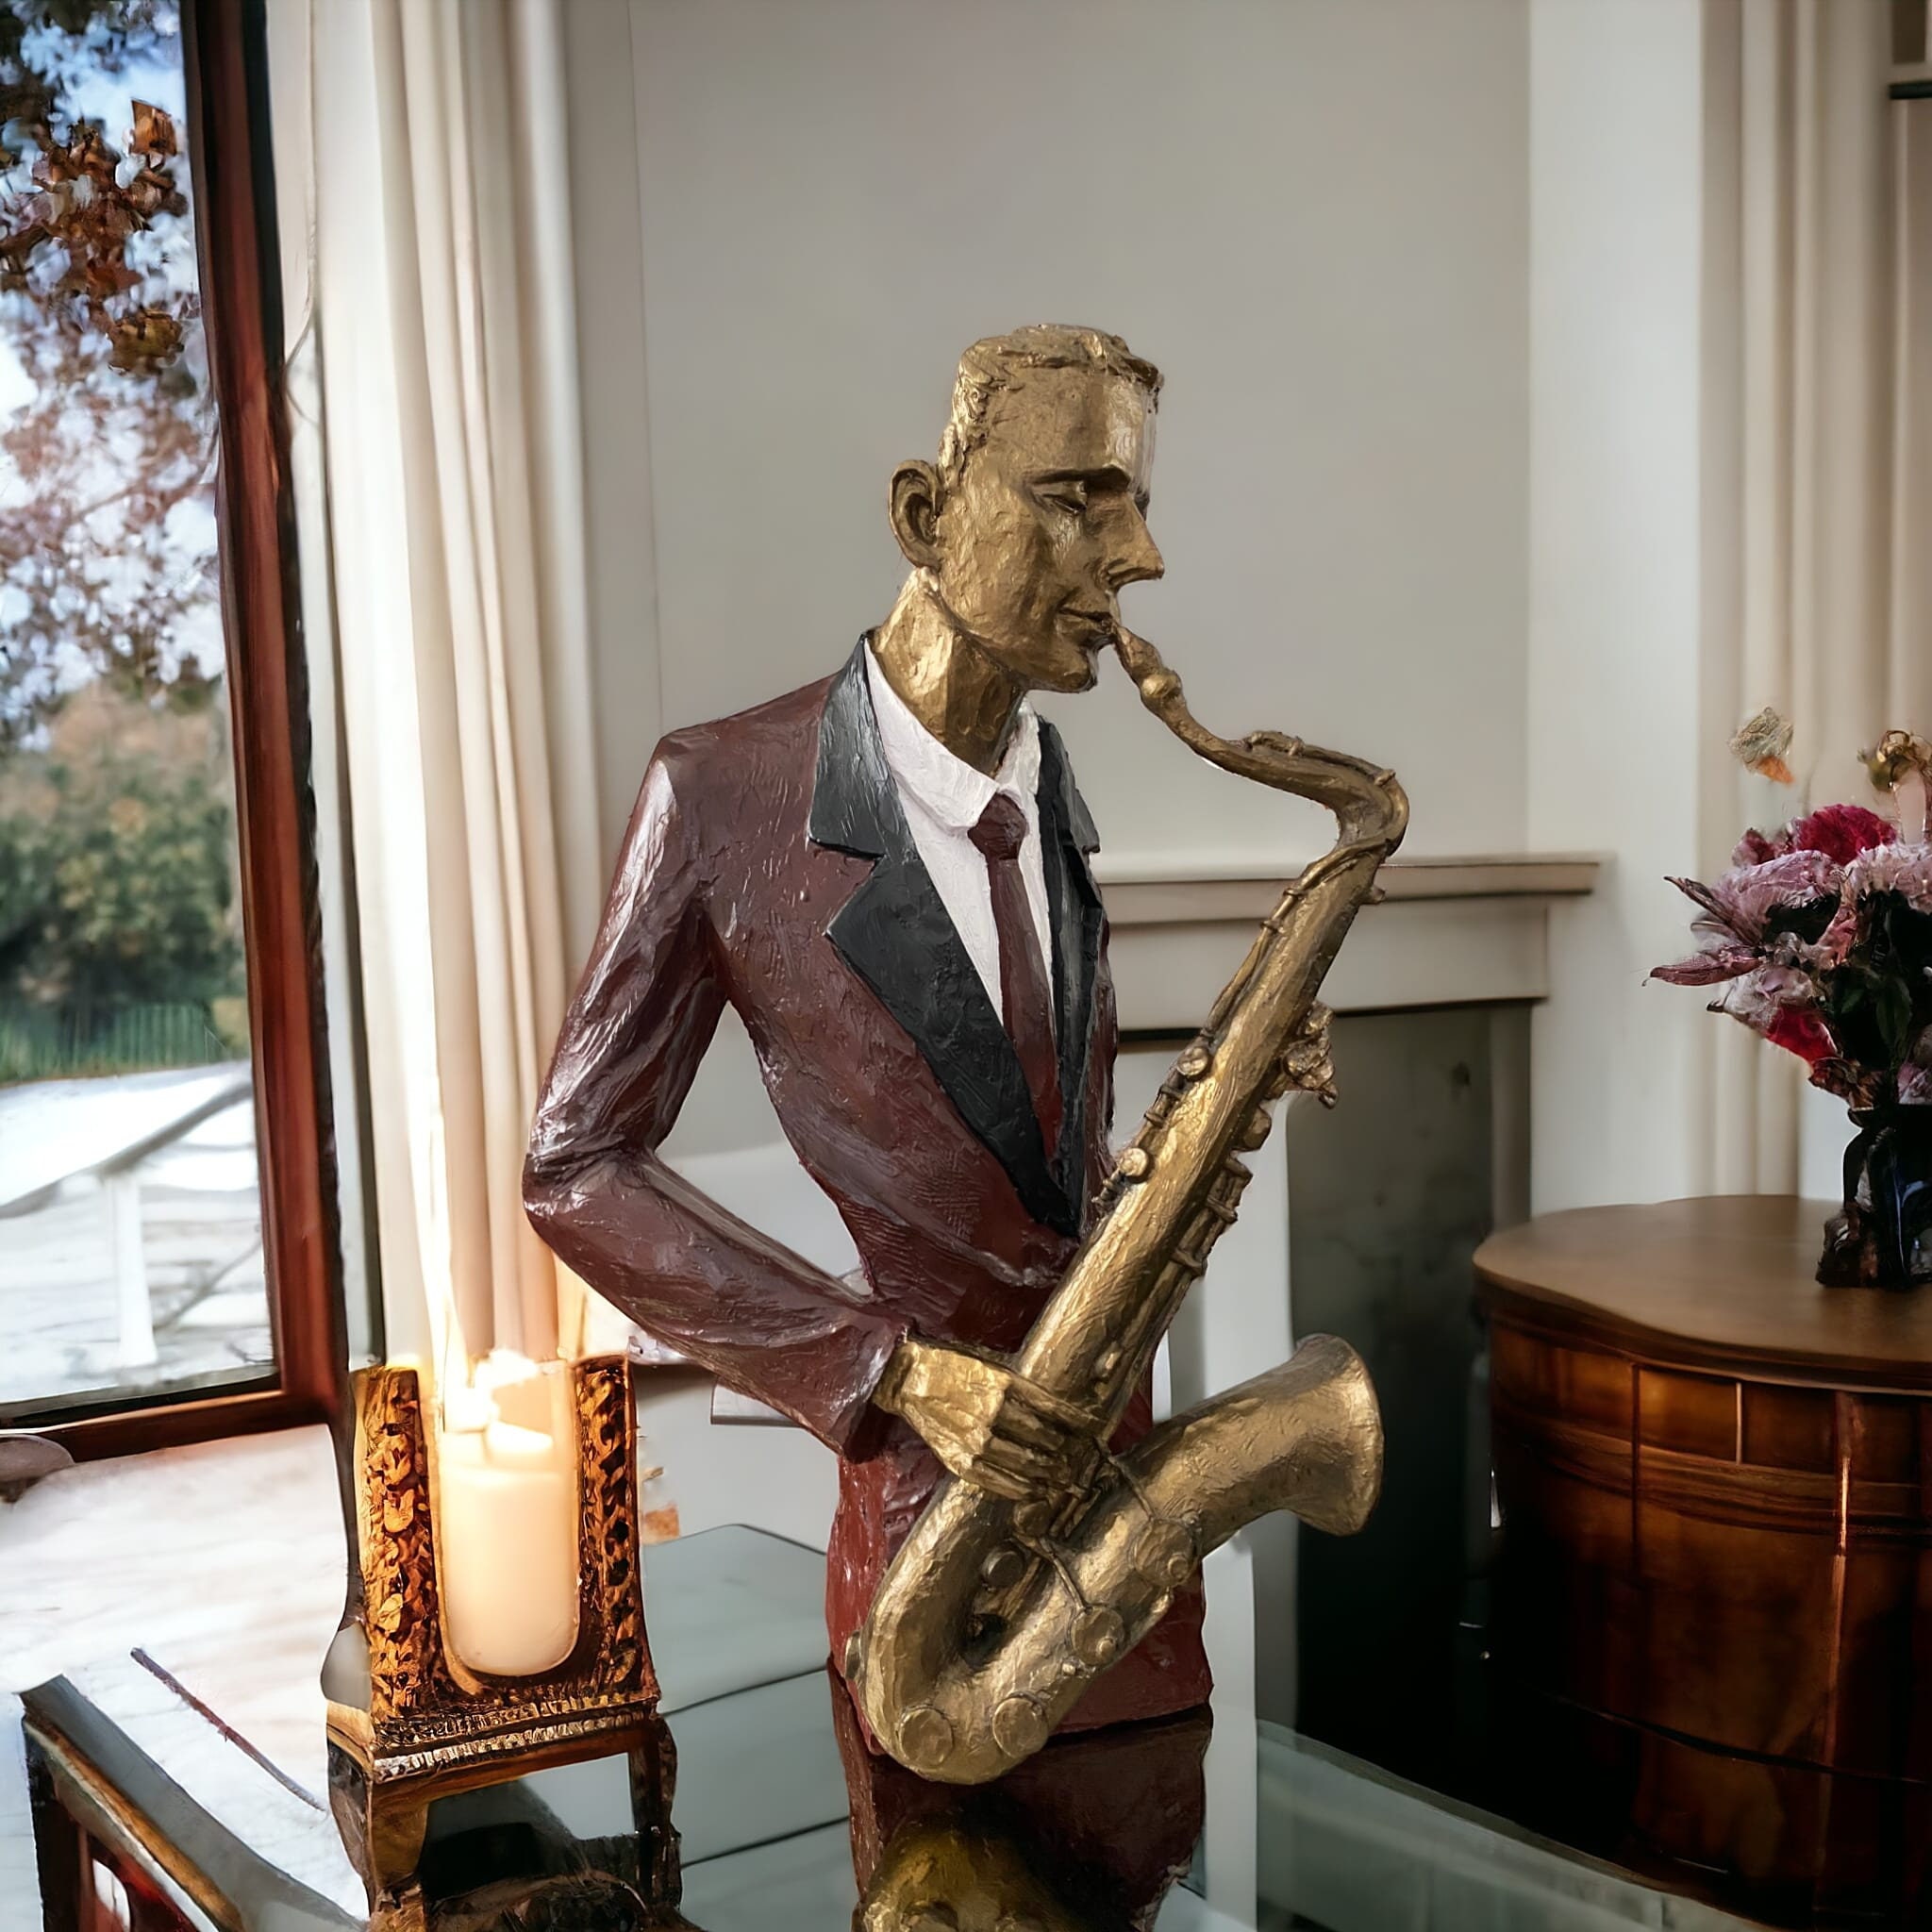 Décoration saxophone - Saxophone miniature en polyrésine